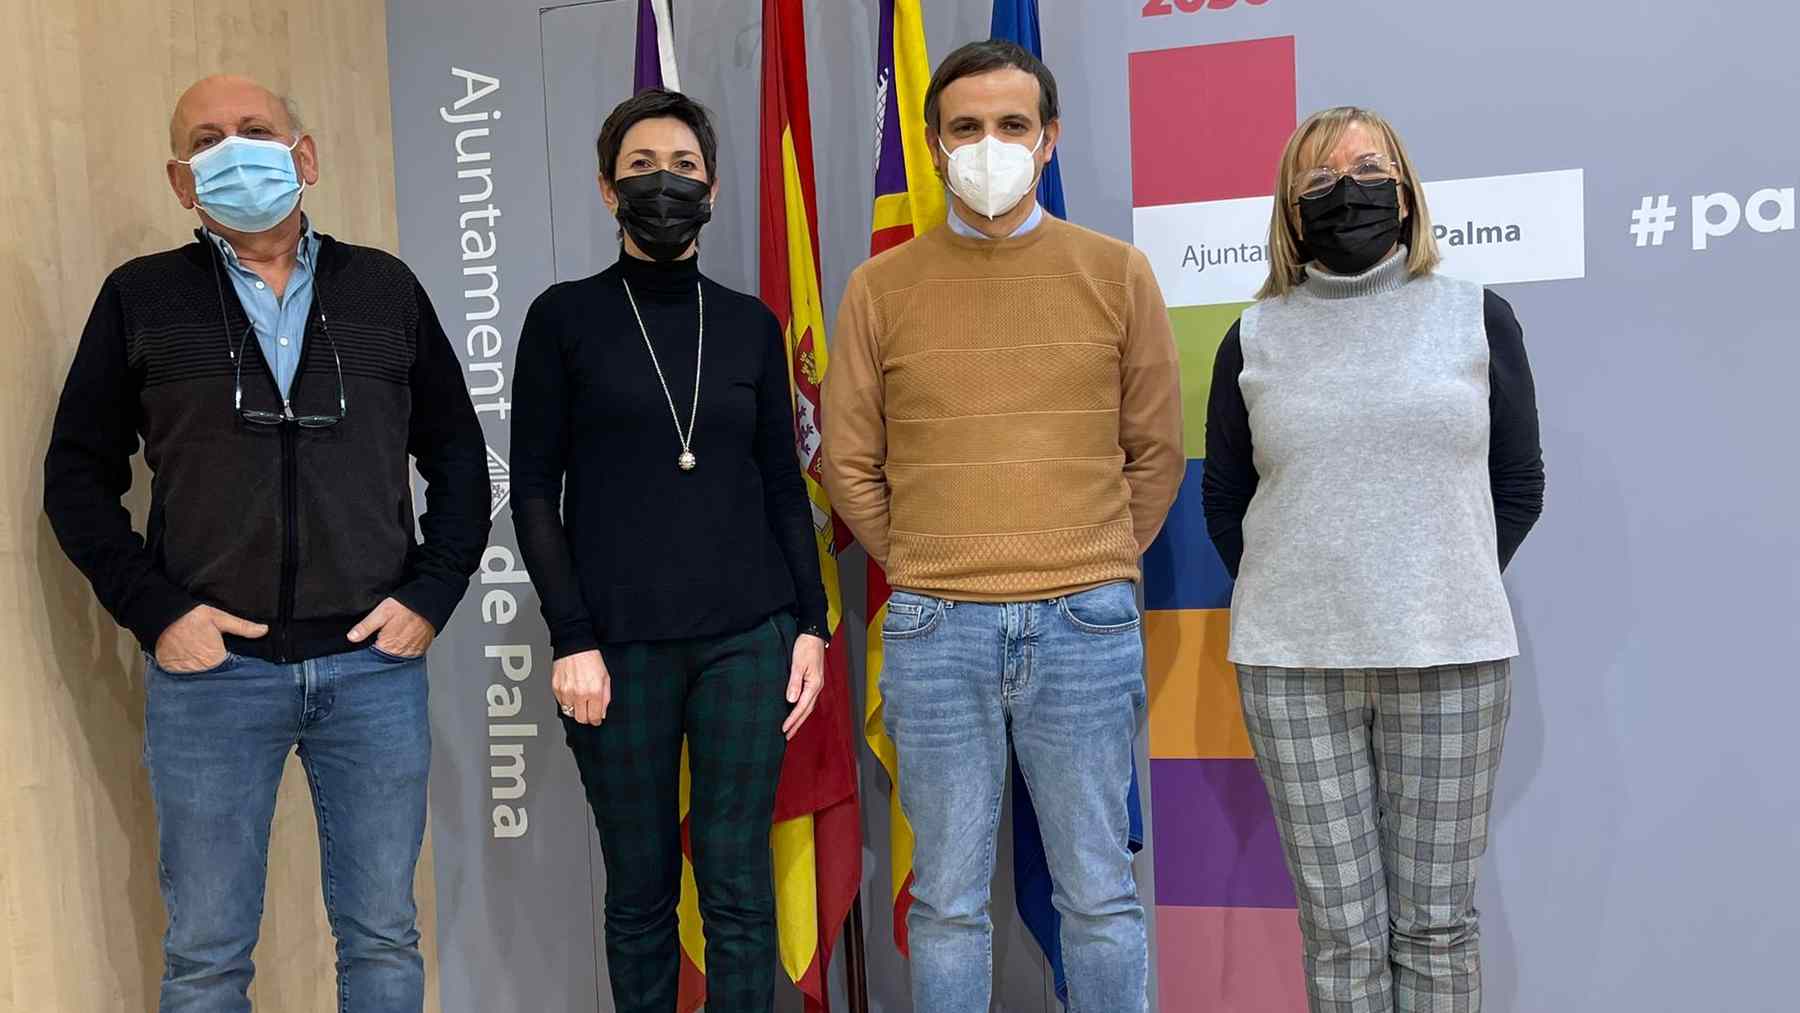 El concejal de Educación, Llorenç Carrió, segundo por la derecha, junto a otros integrantes del Patronato Municipal de Guarderías de Palma.